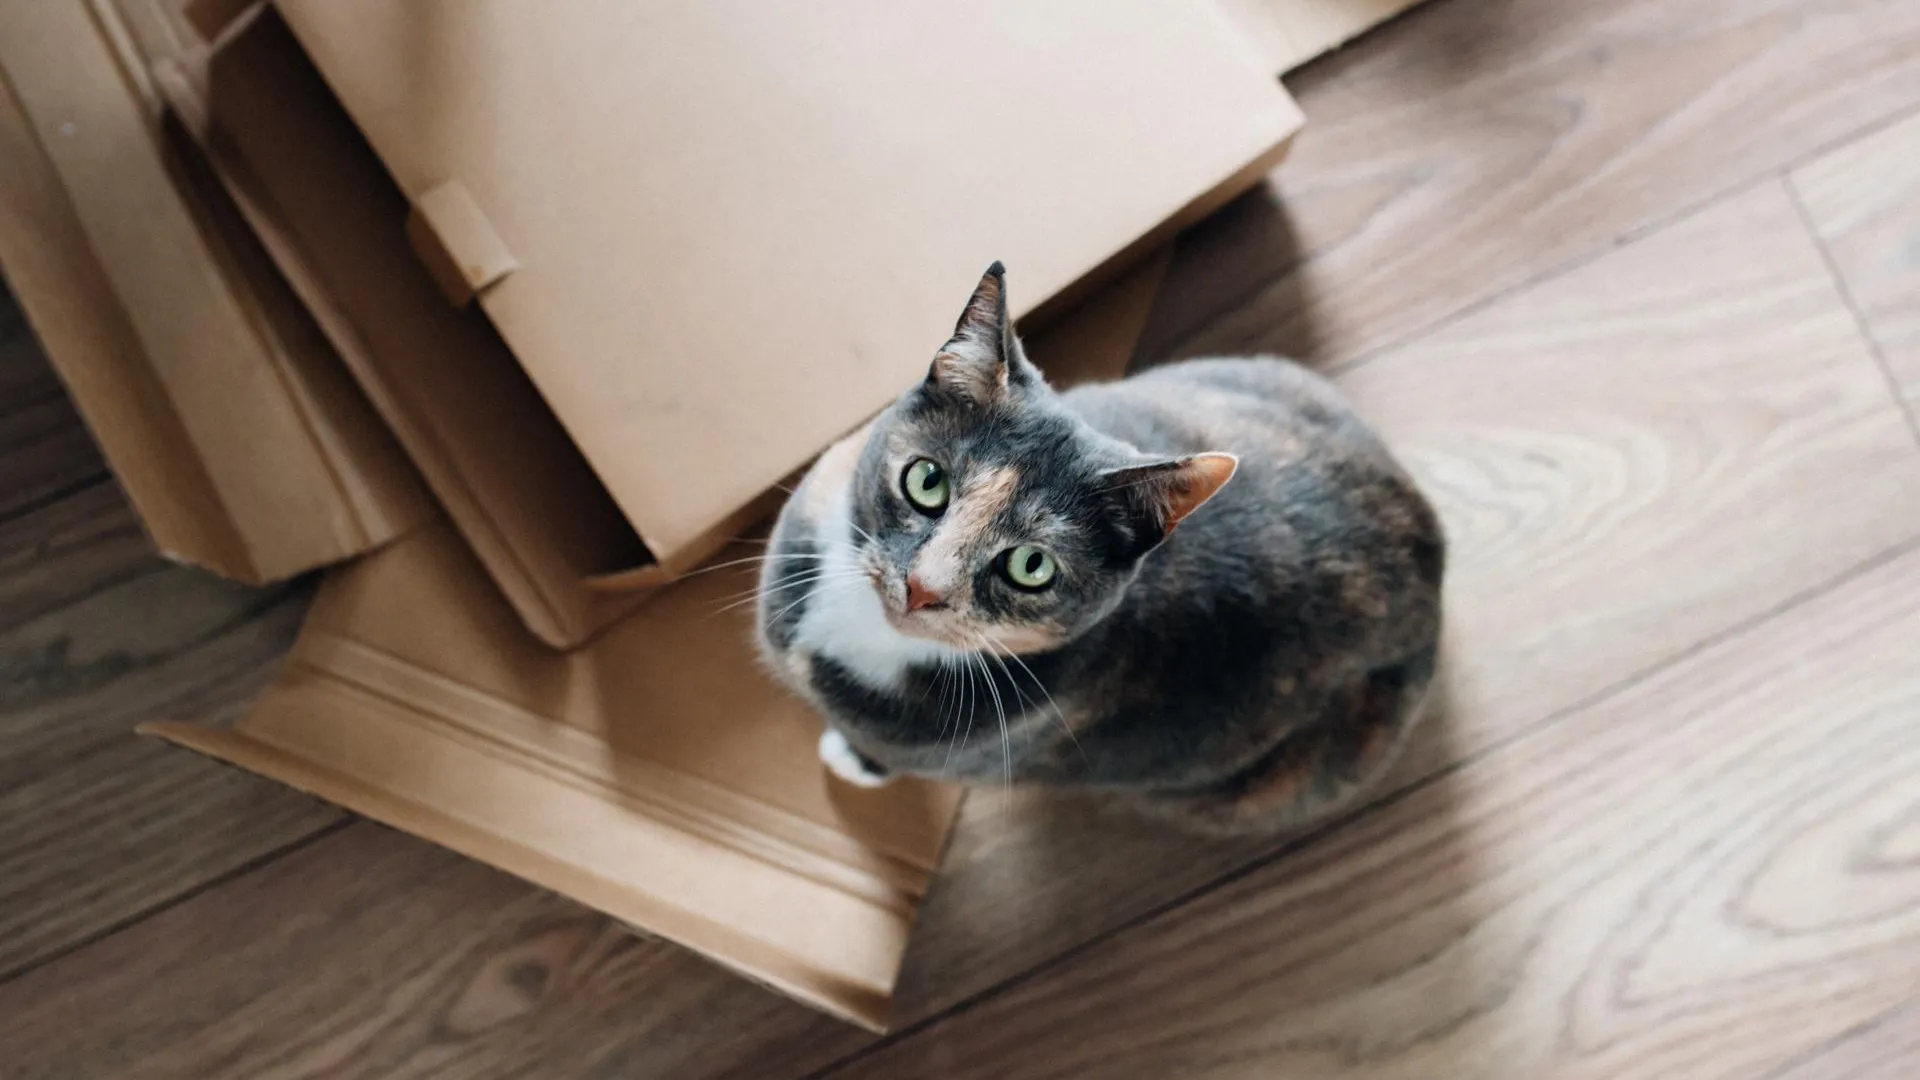 «Обожает коробки». Спрятавшуюся кошку случайно доставили из Юты в Калифорнию